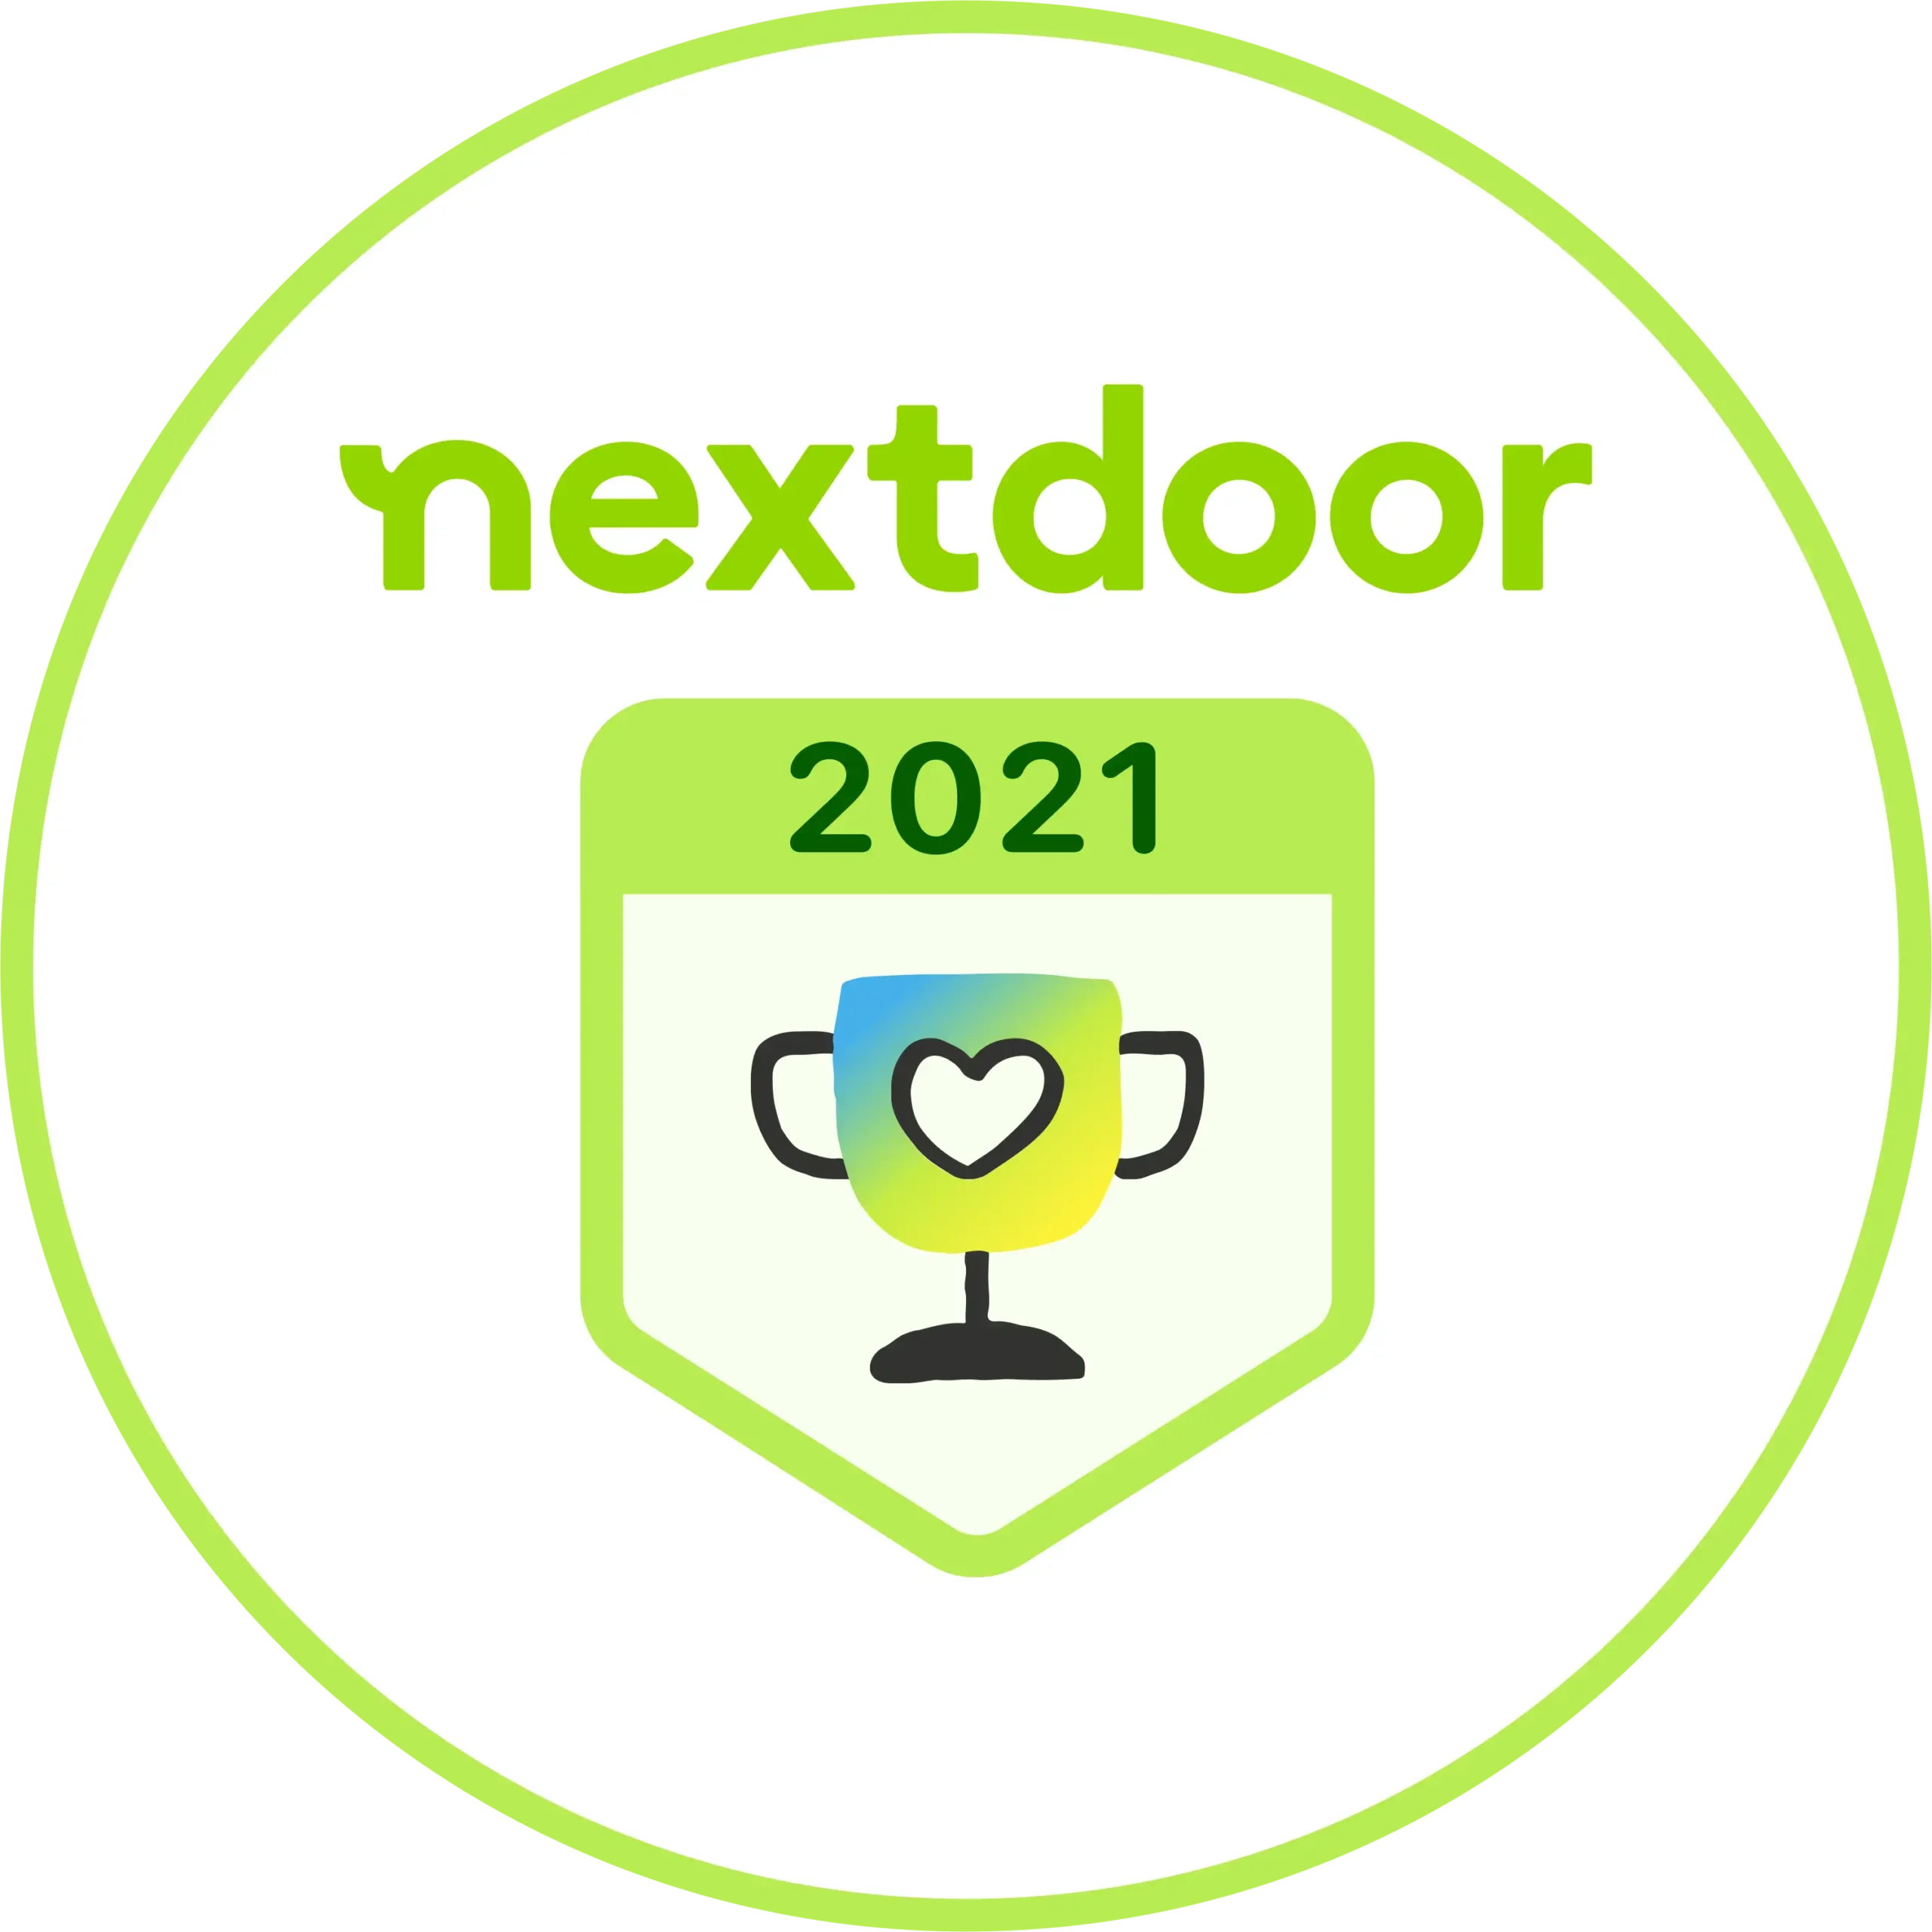 Nextdoor 2021